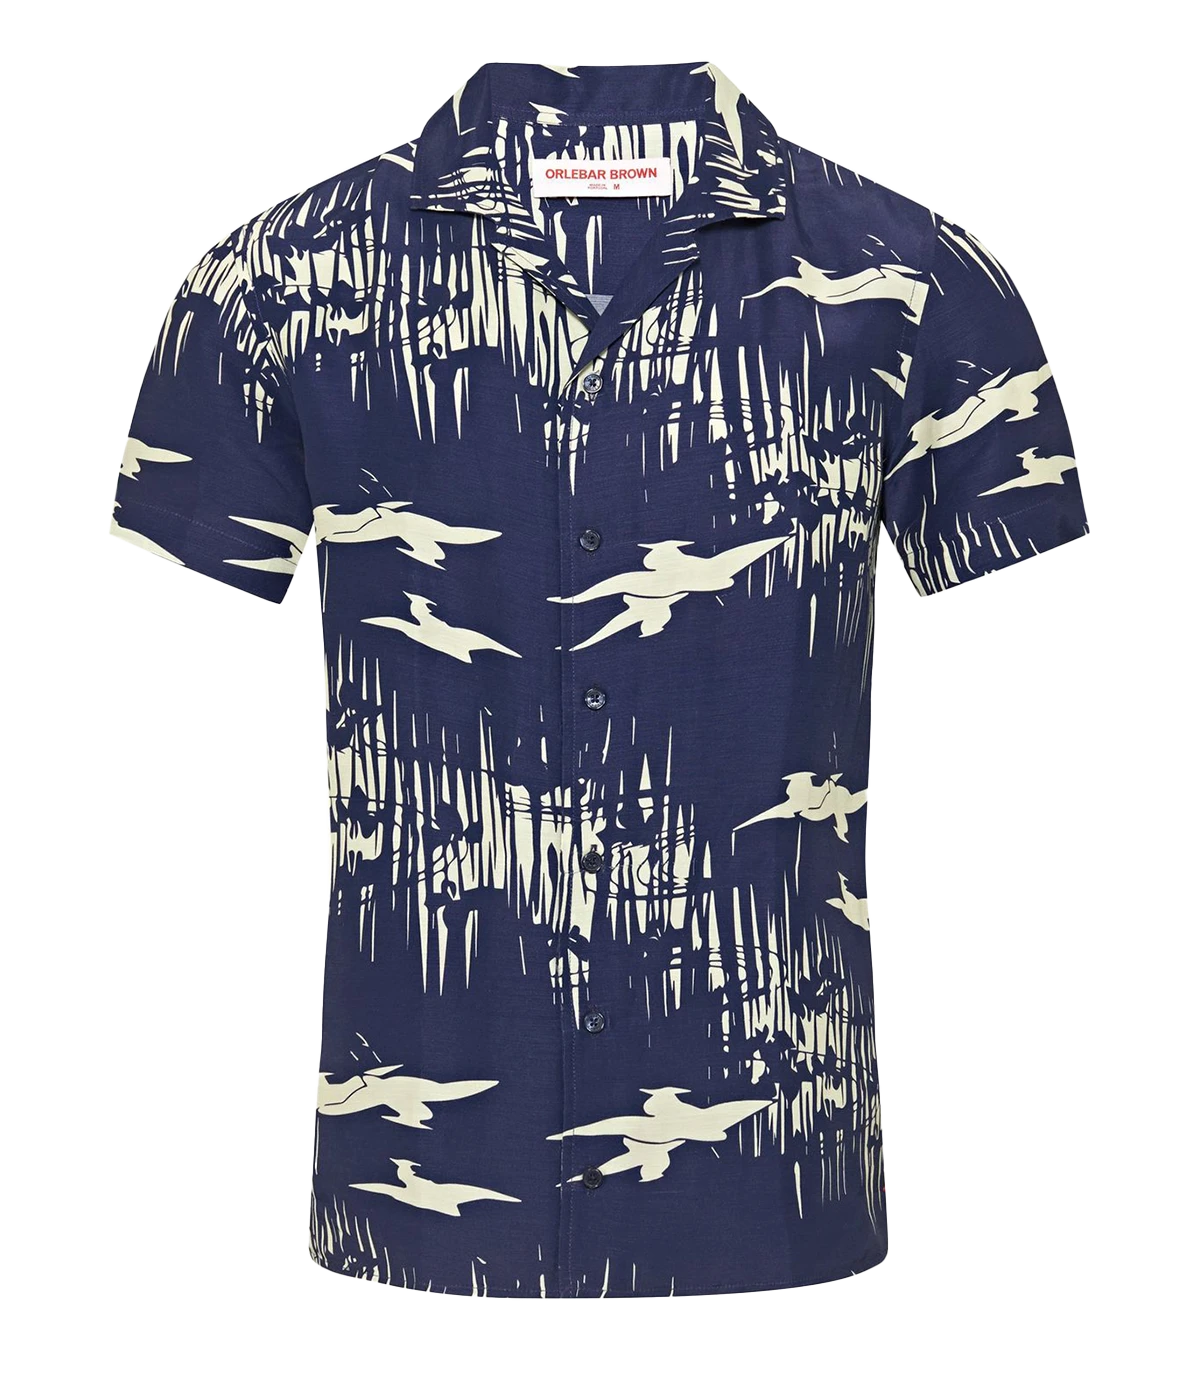 Hibbert Living Dream Shirt in Midnight Navy Sea